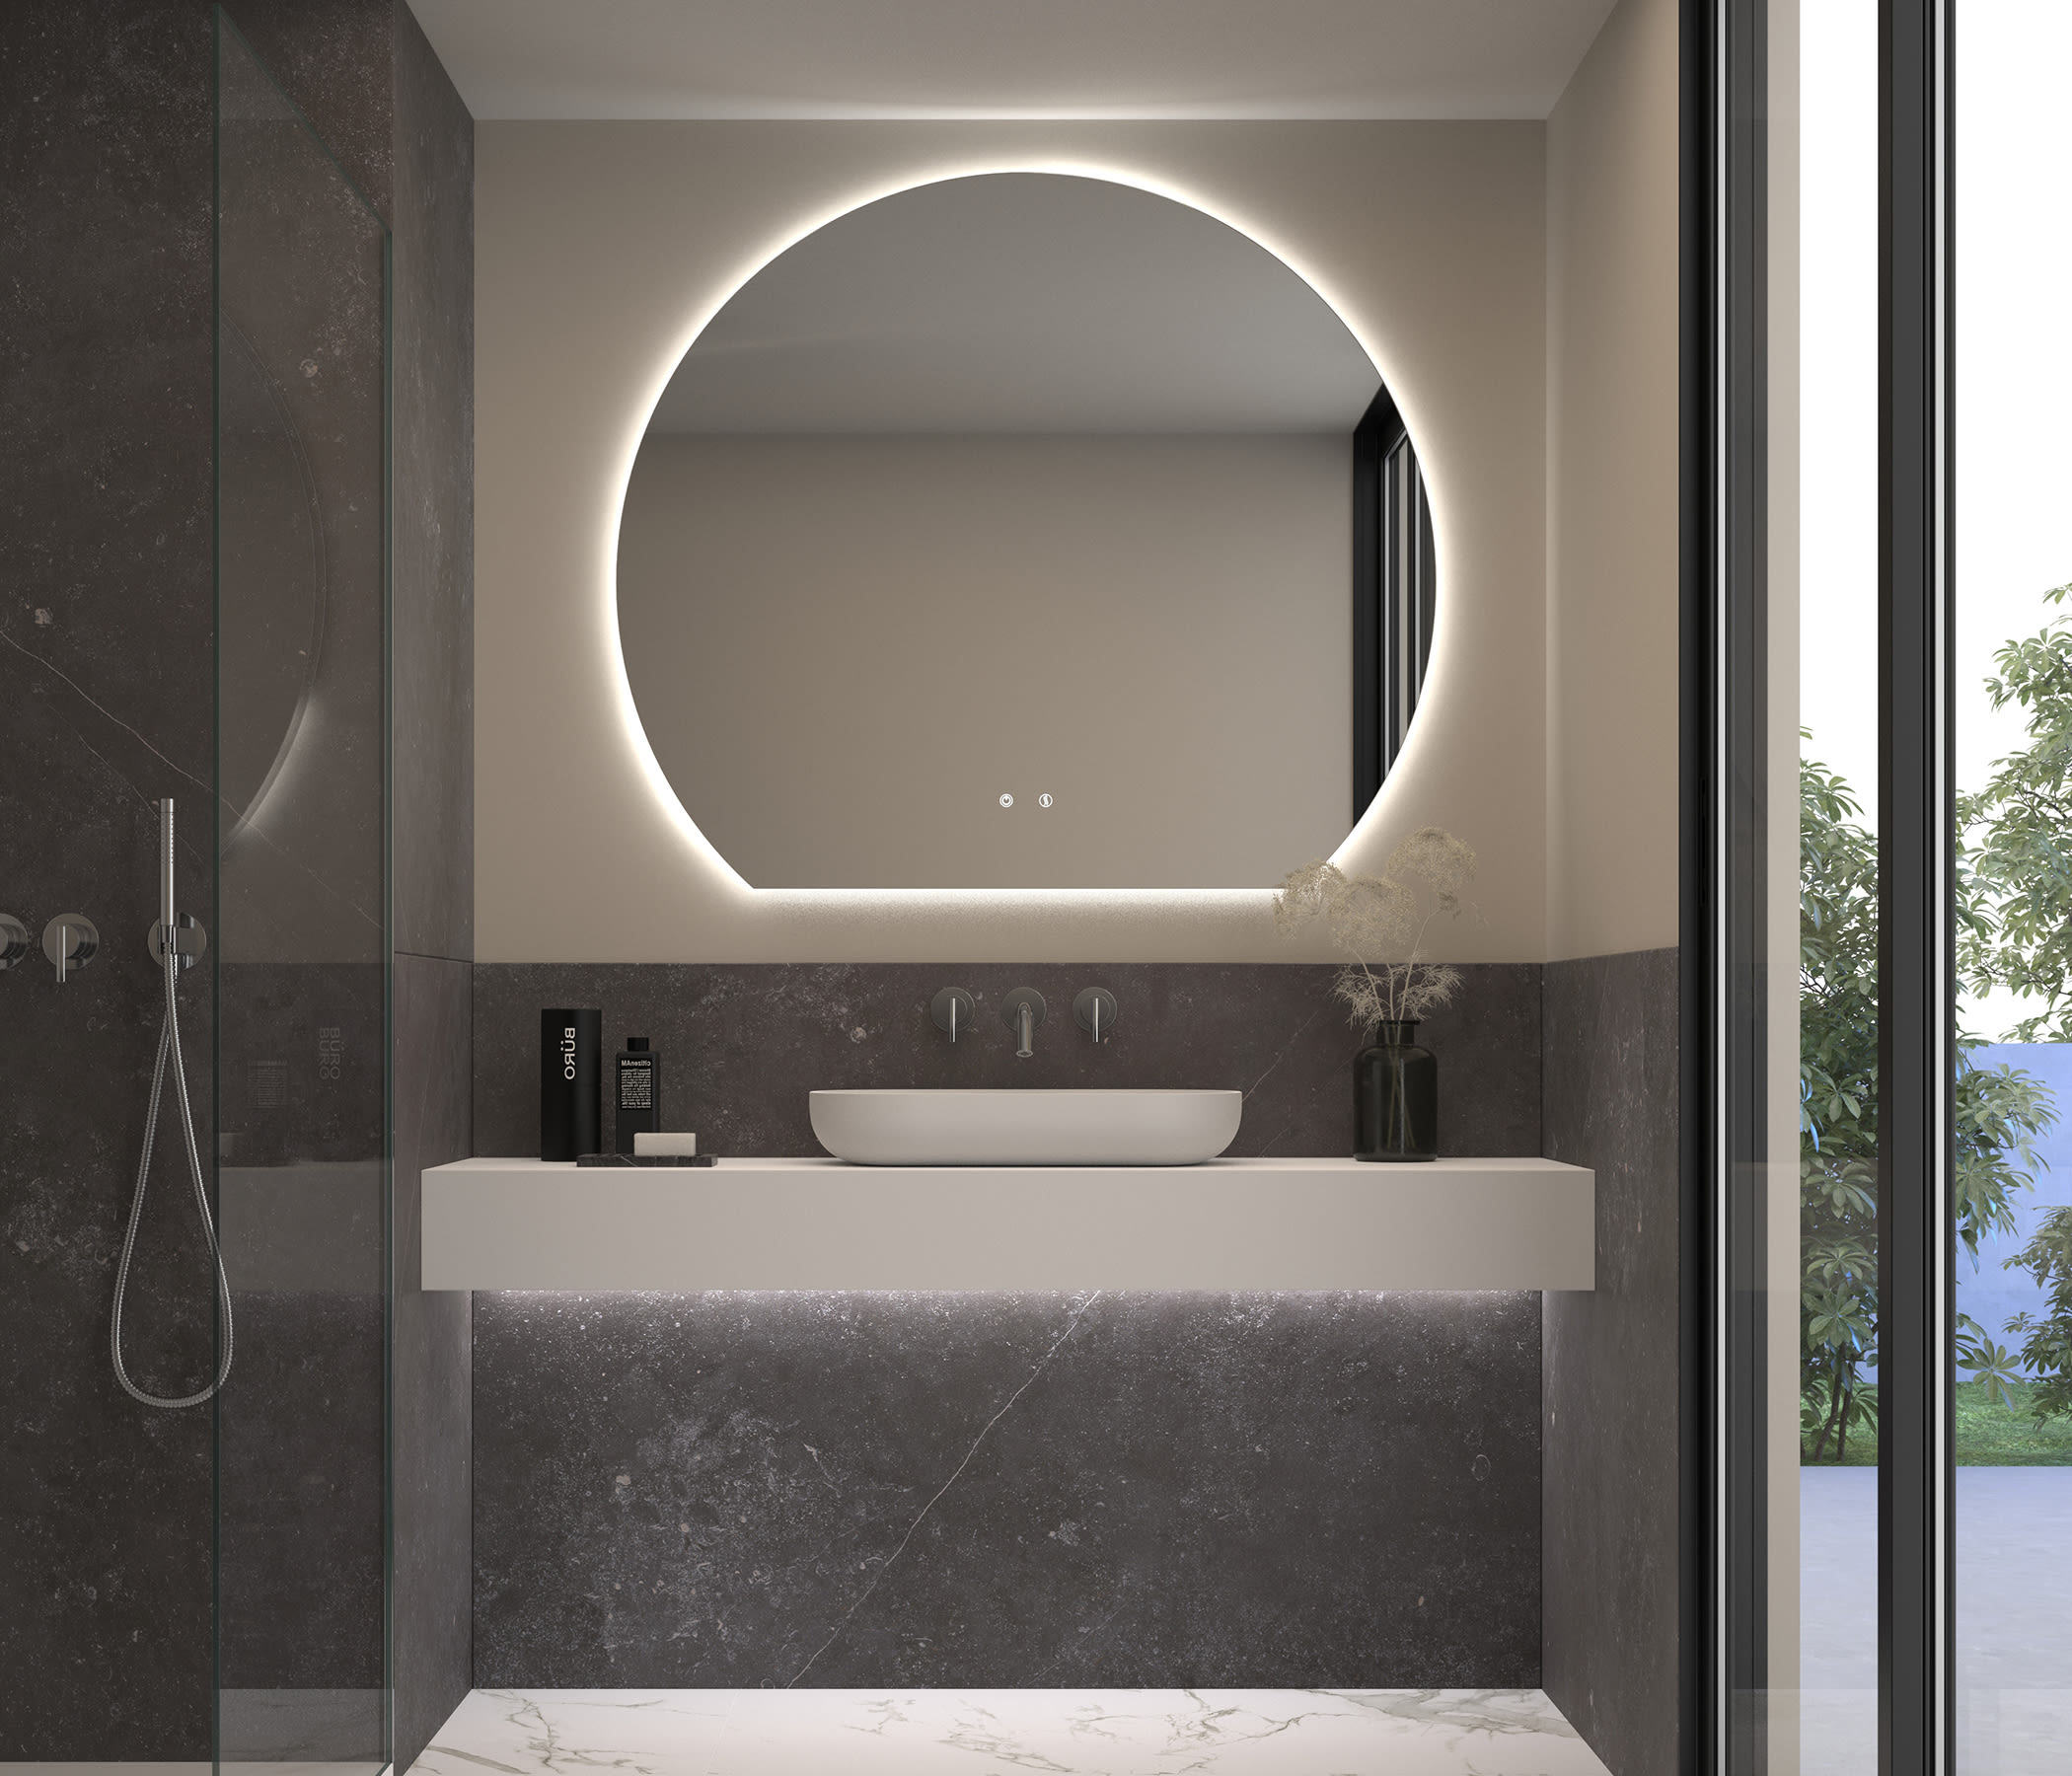 Espejo LED para baño con luz perimetral y Antivaho Eurobath | LeonLeds